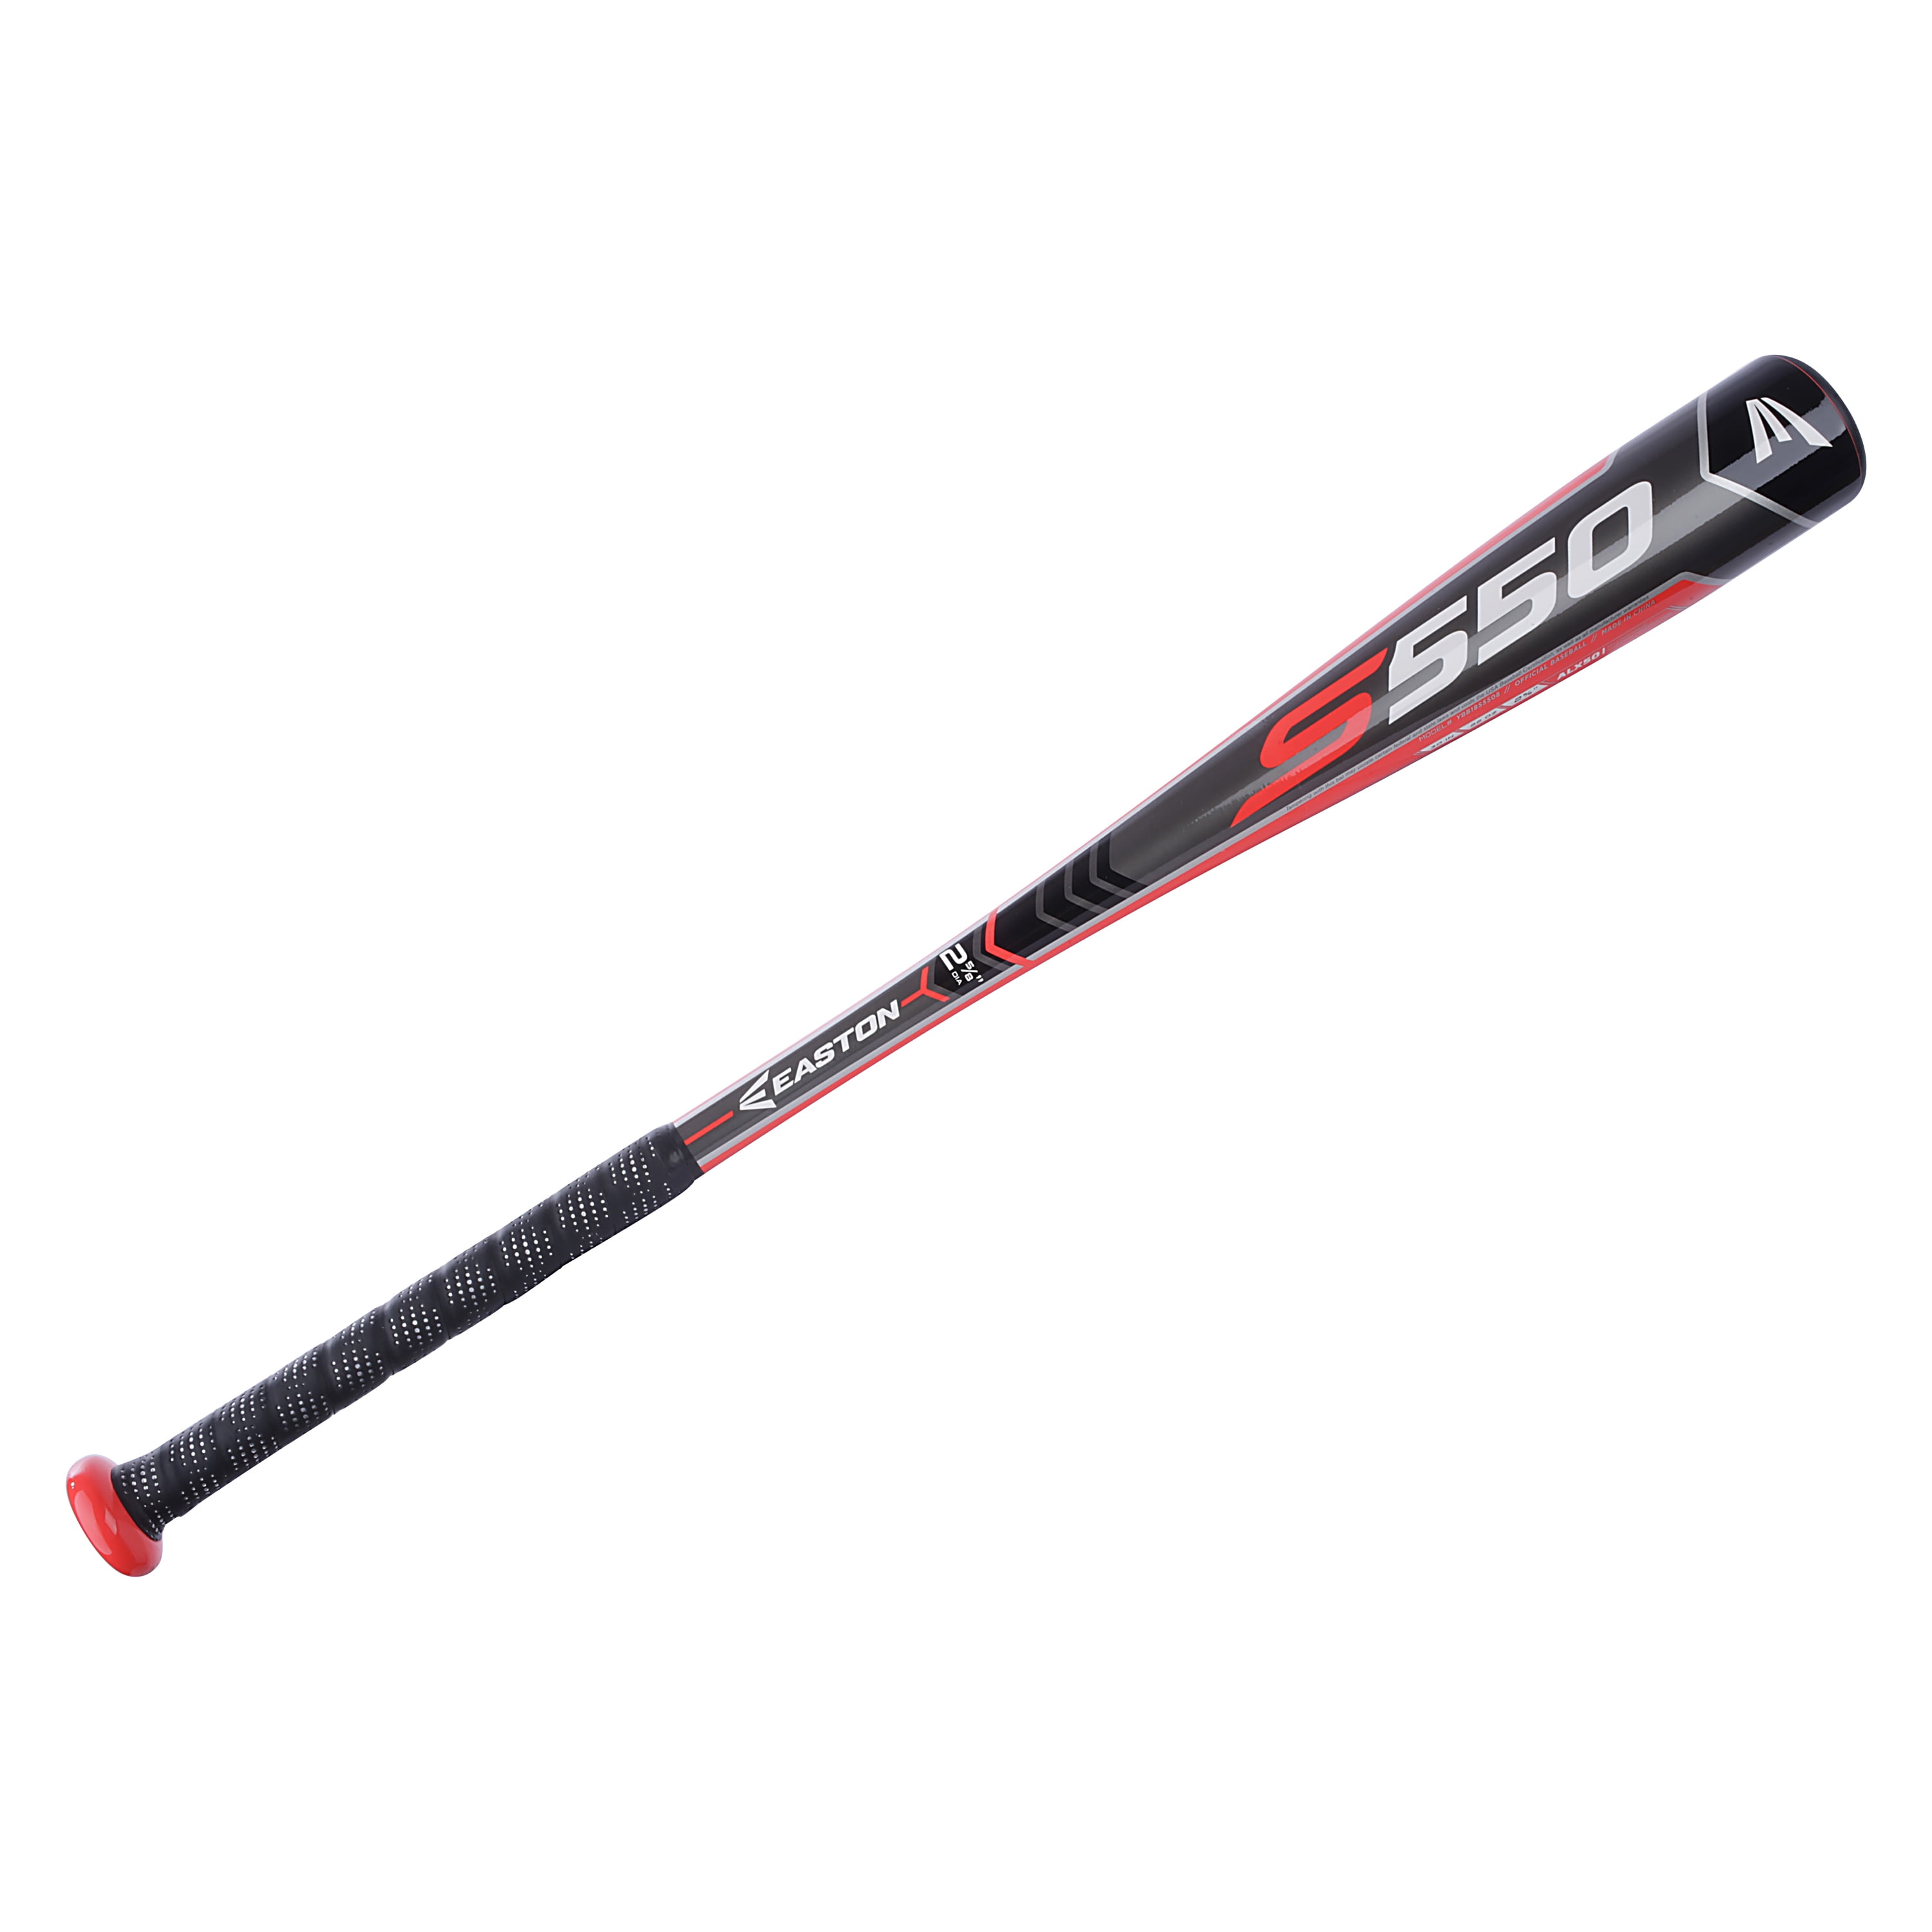 -8 Easton 2018 S550 USA Baseball Bat Ybb18s5508 for sale online 